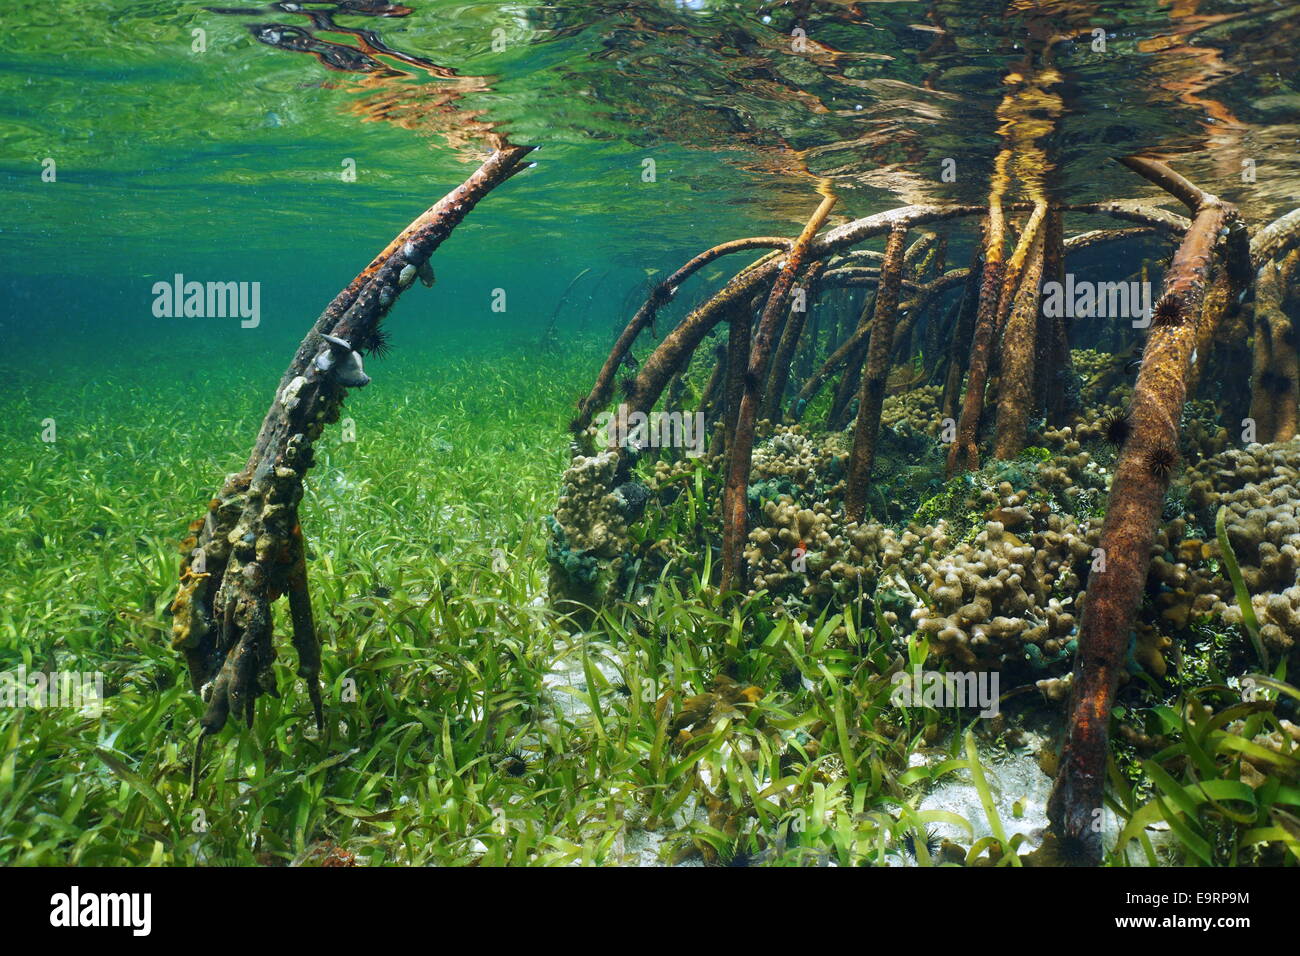 Sous-marine de la Mangrove la vie sous-marine avec les racines, océan Atlantique, France Banque D'Images